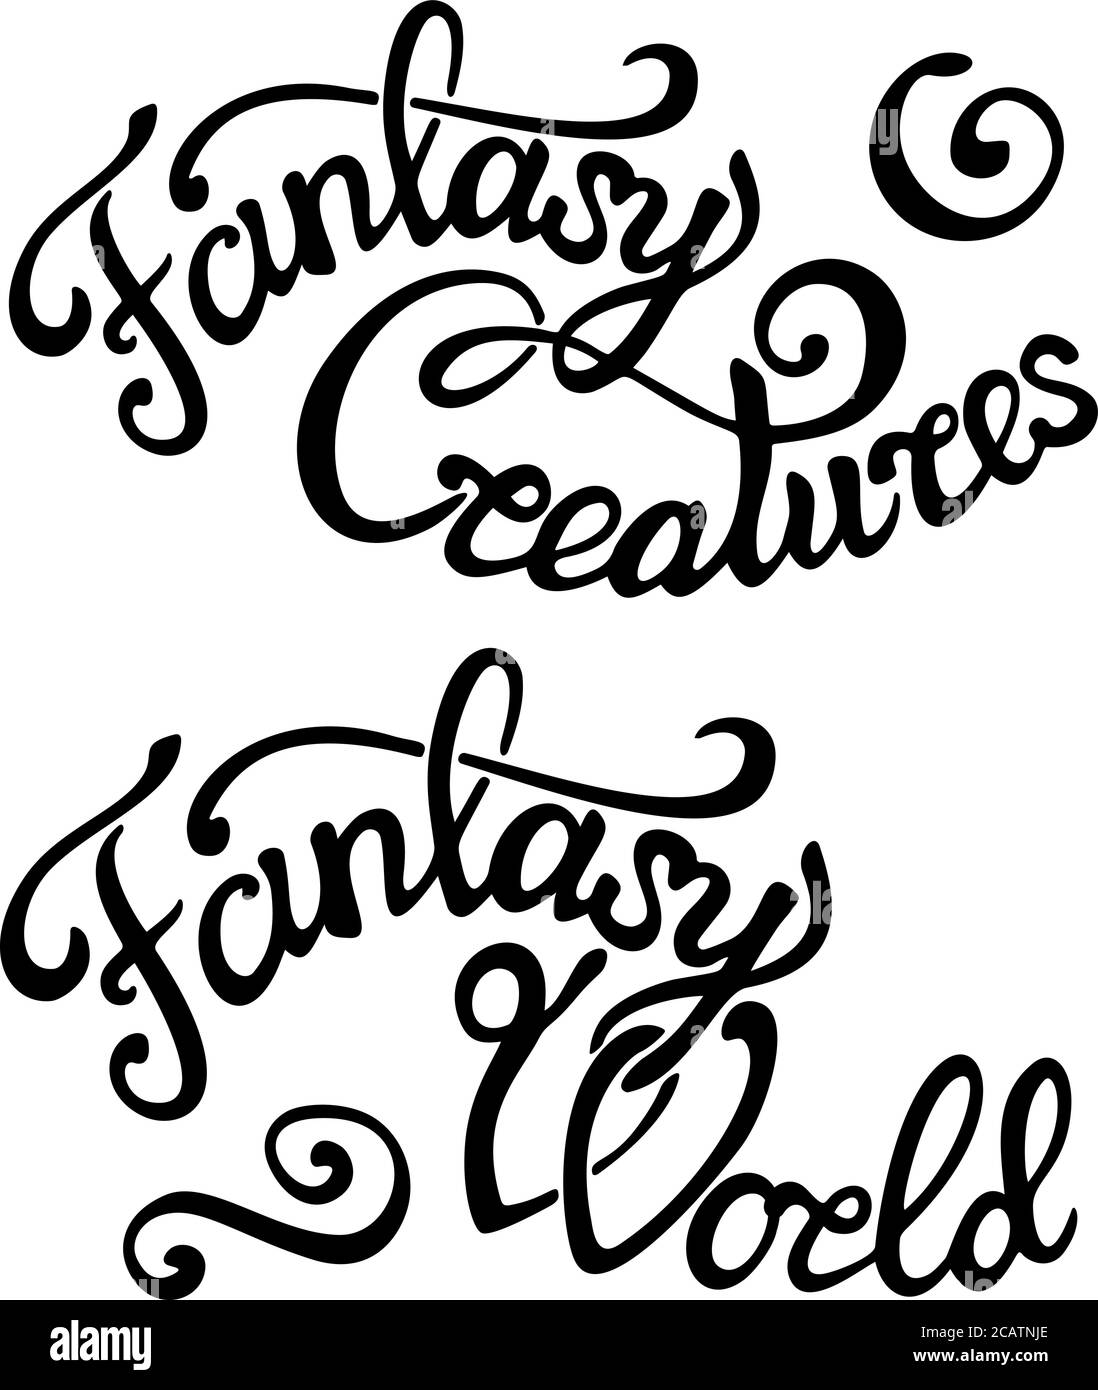 Bellas letras con texto negro mundo de fantasía y criaturas de fantasía sobre fondo blanco Ilustración del Vector